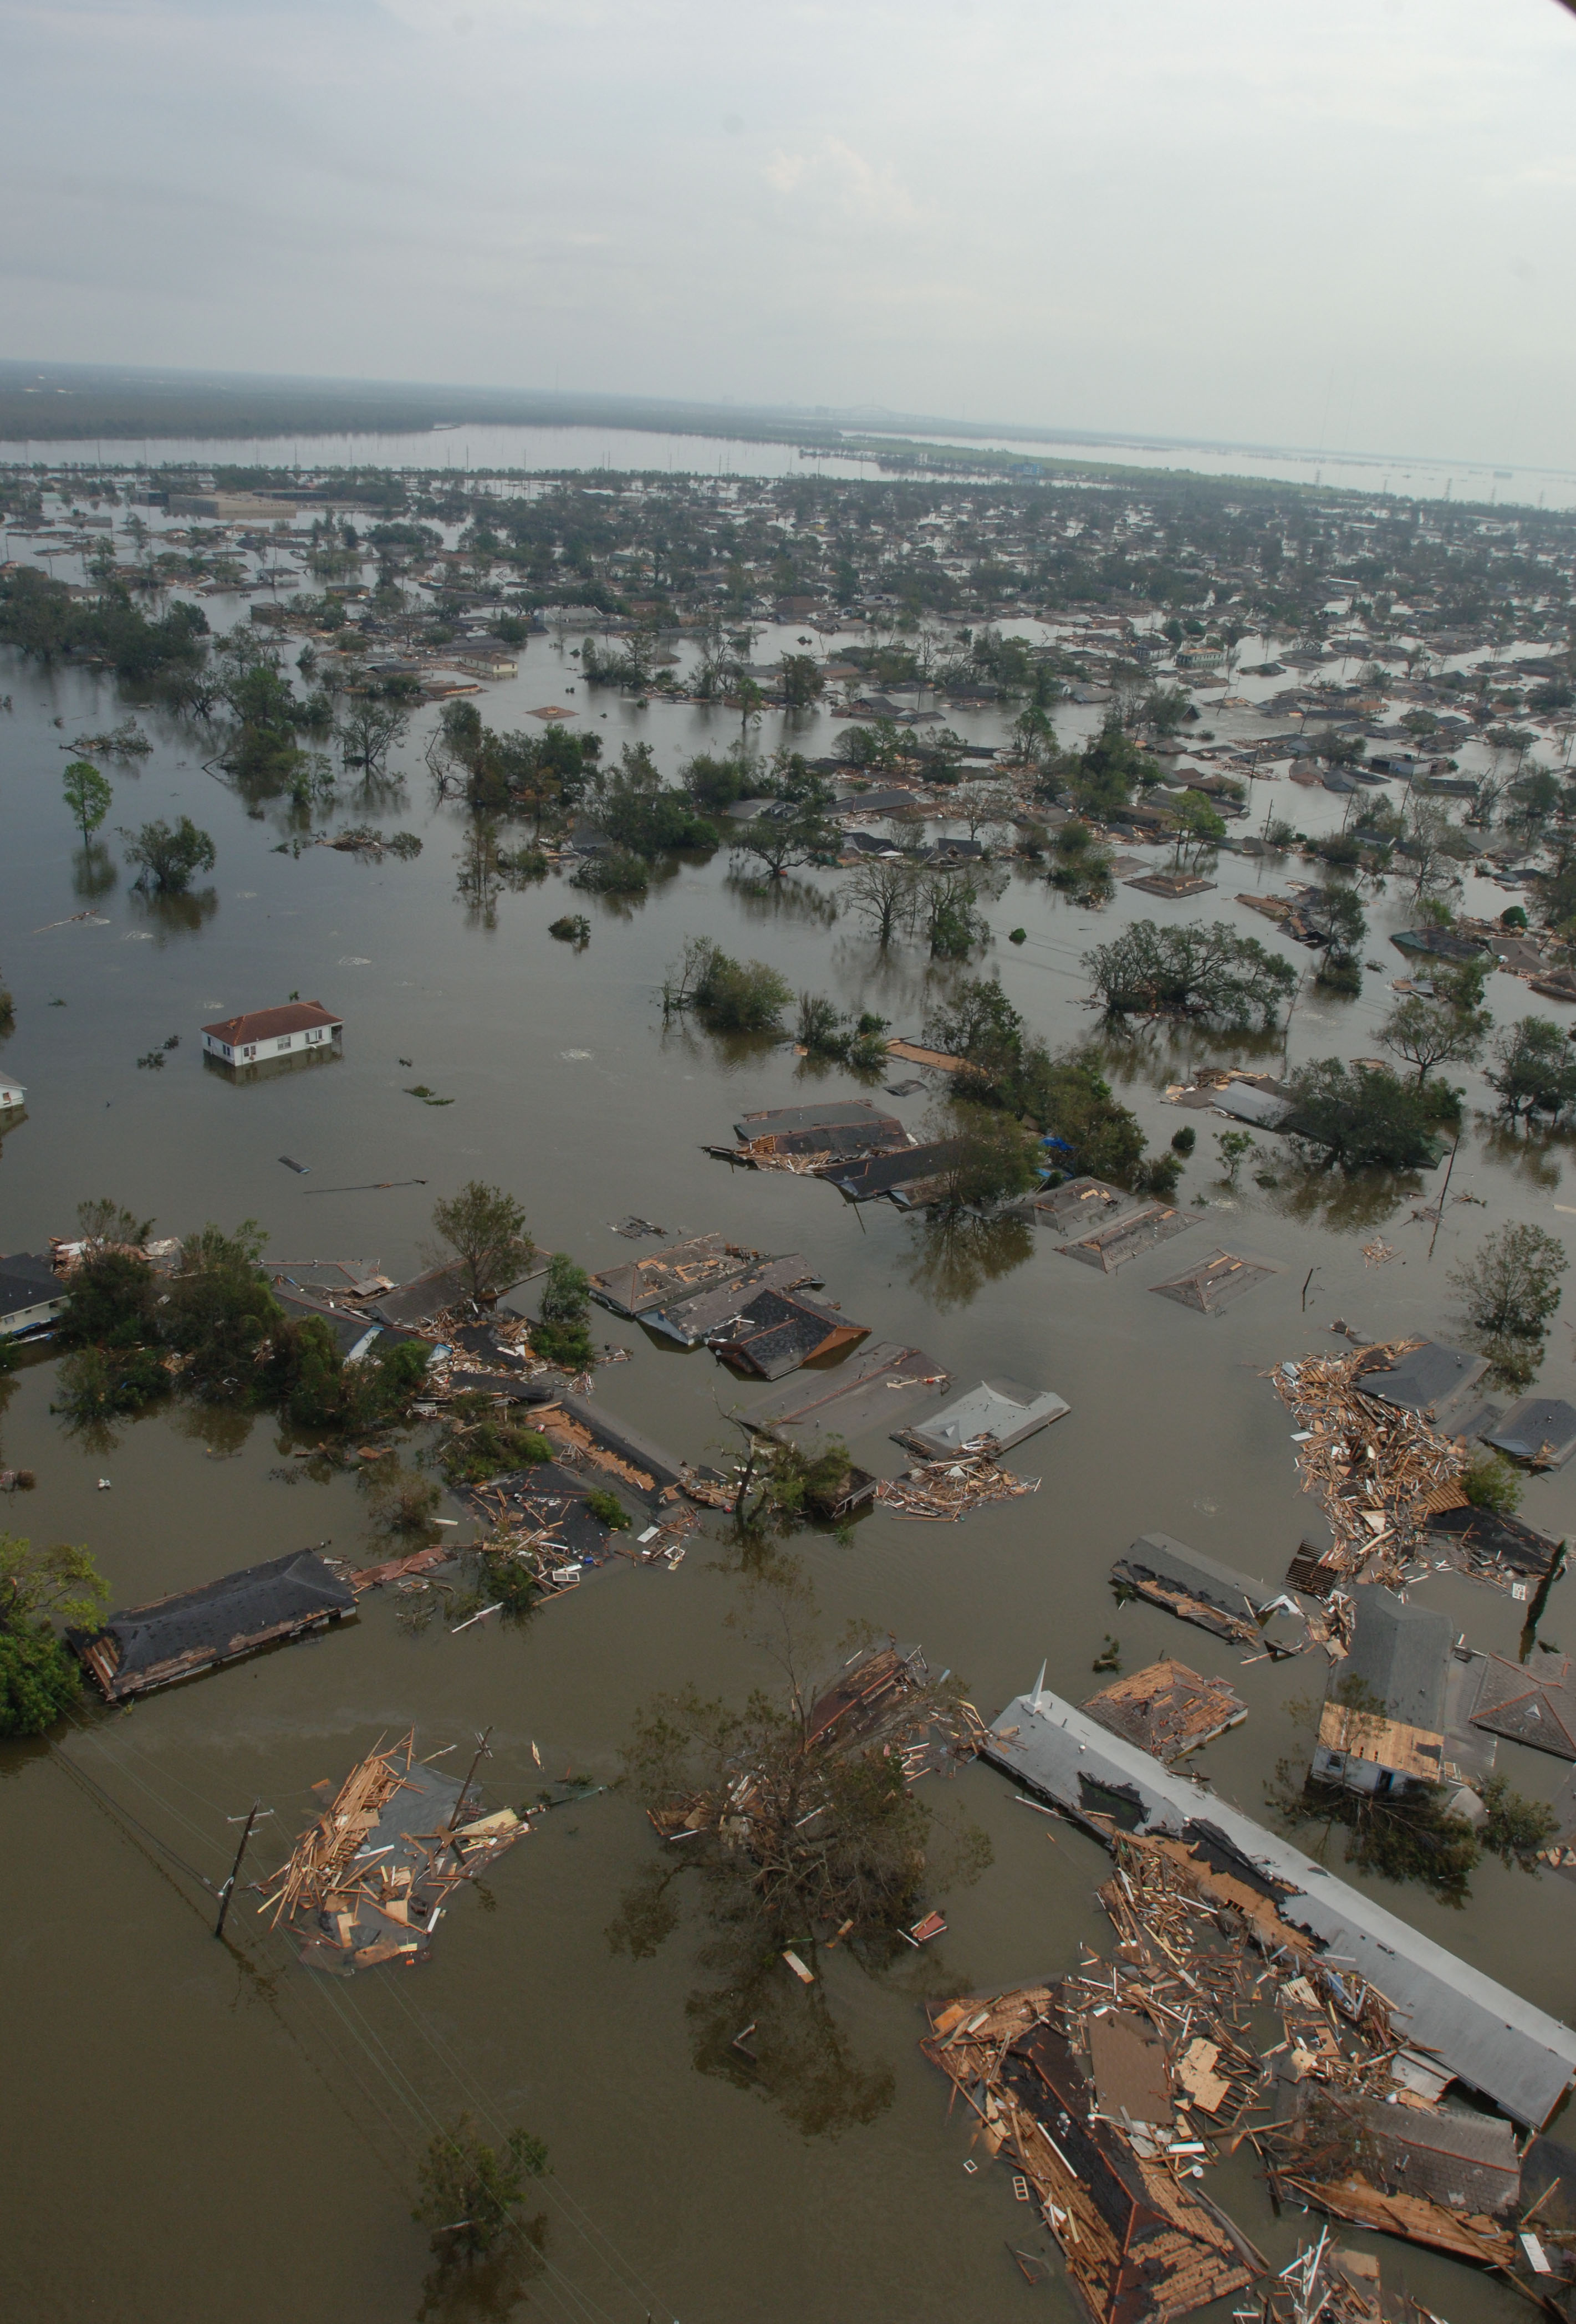 FEMA - 14963 - Photograph by Jocelyn Augustino taken on 08-30-2005 in Louisiana